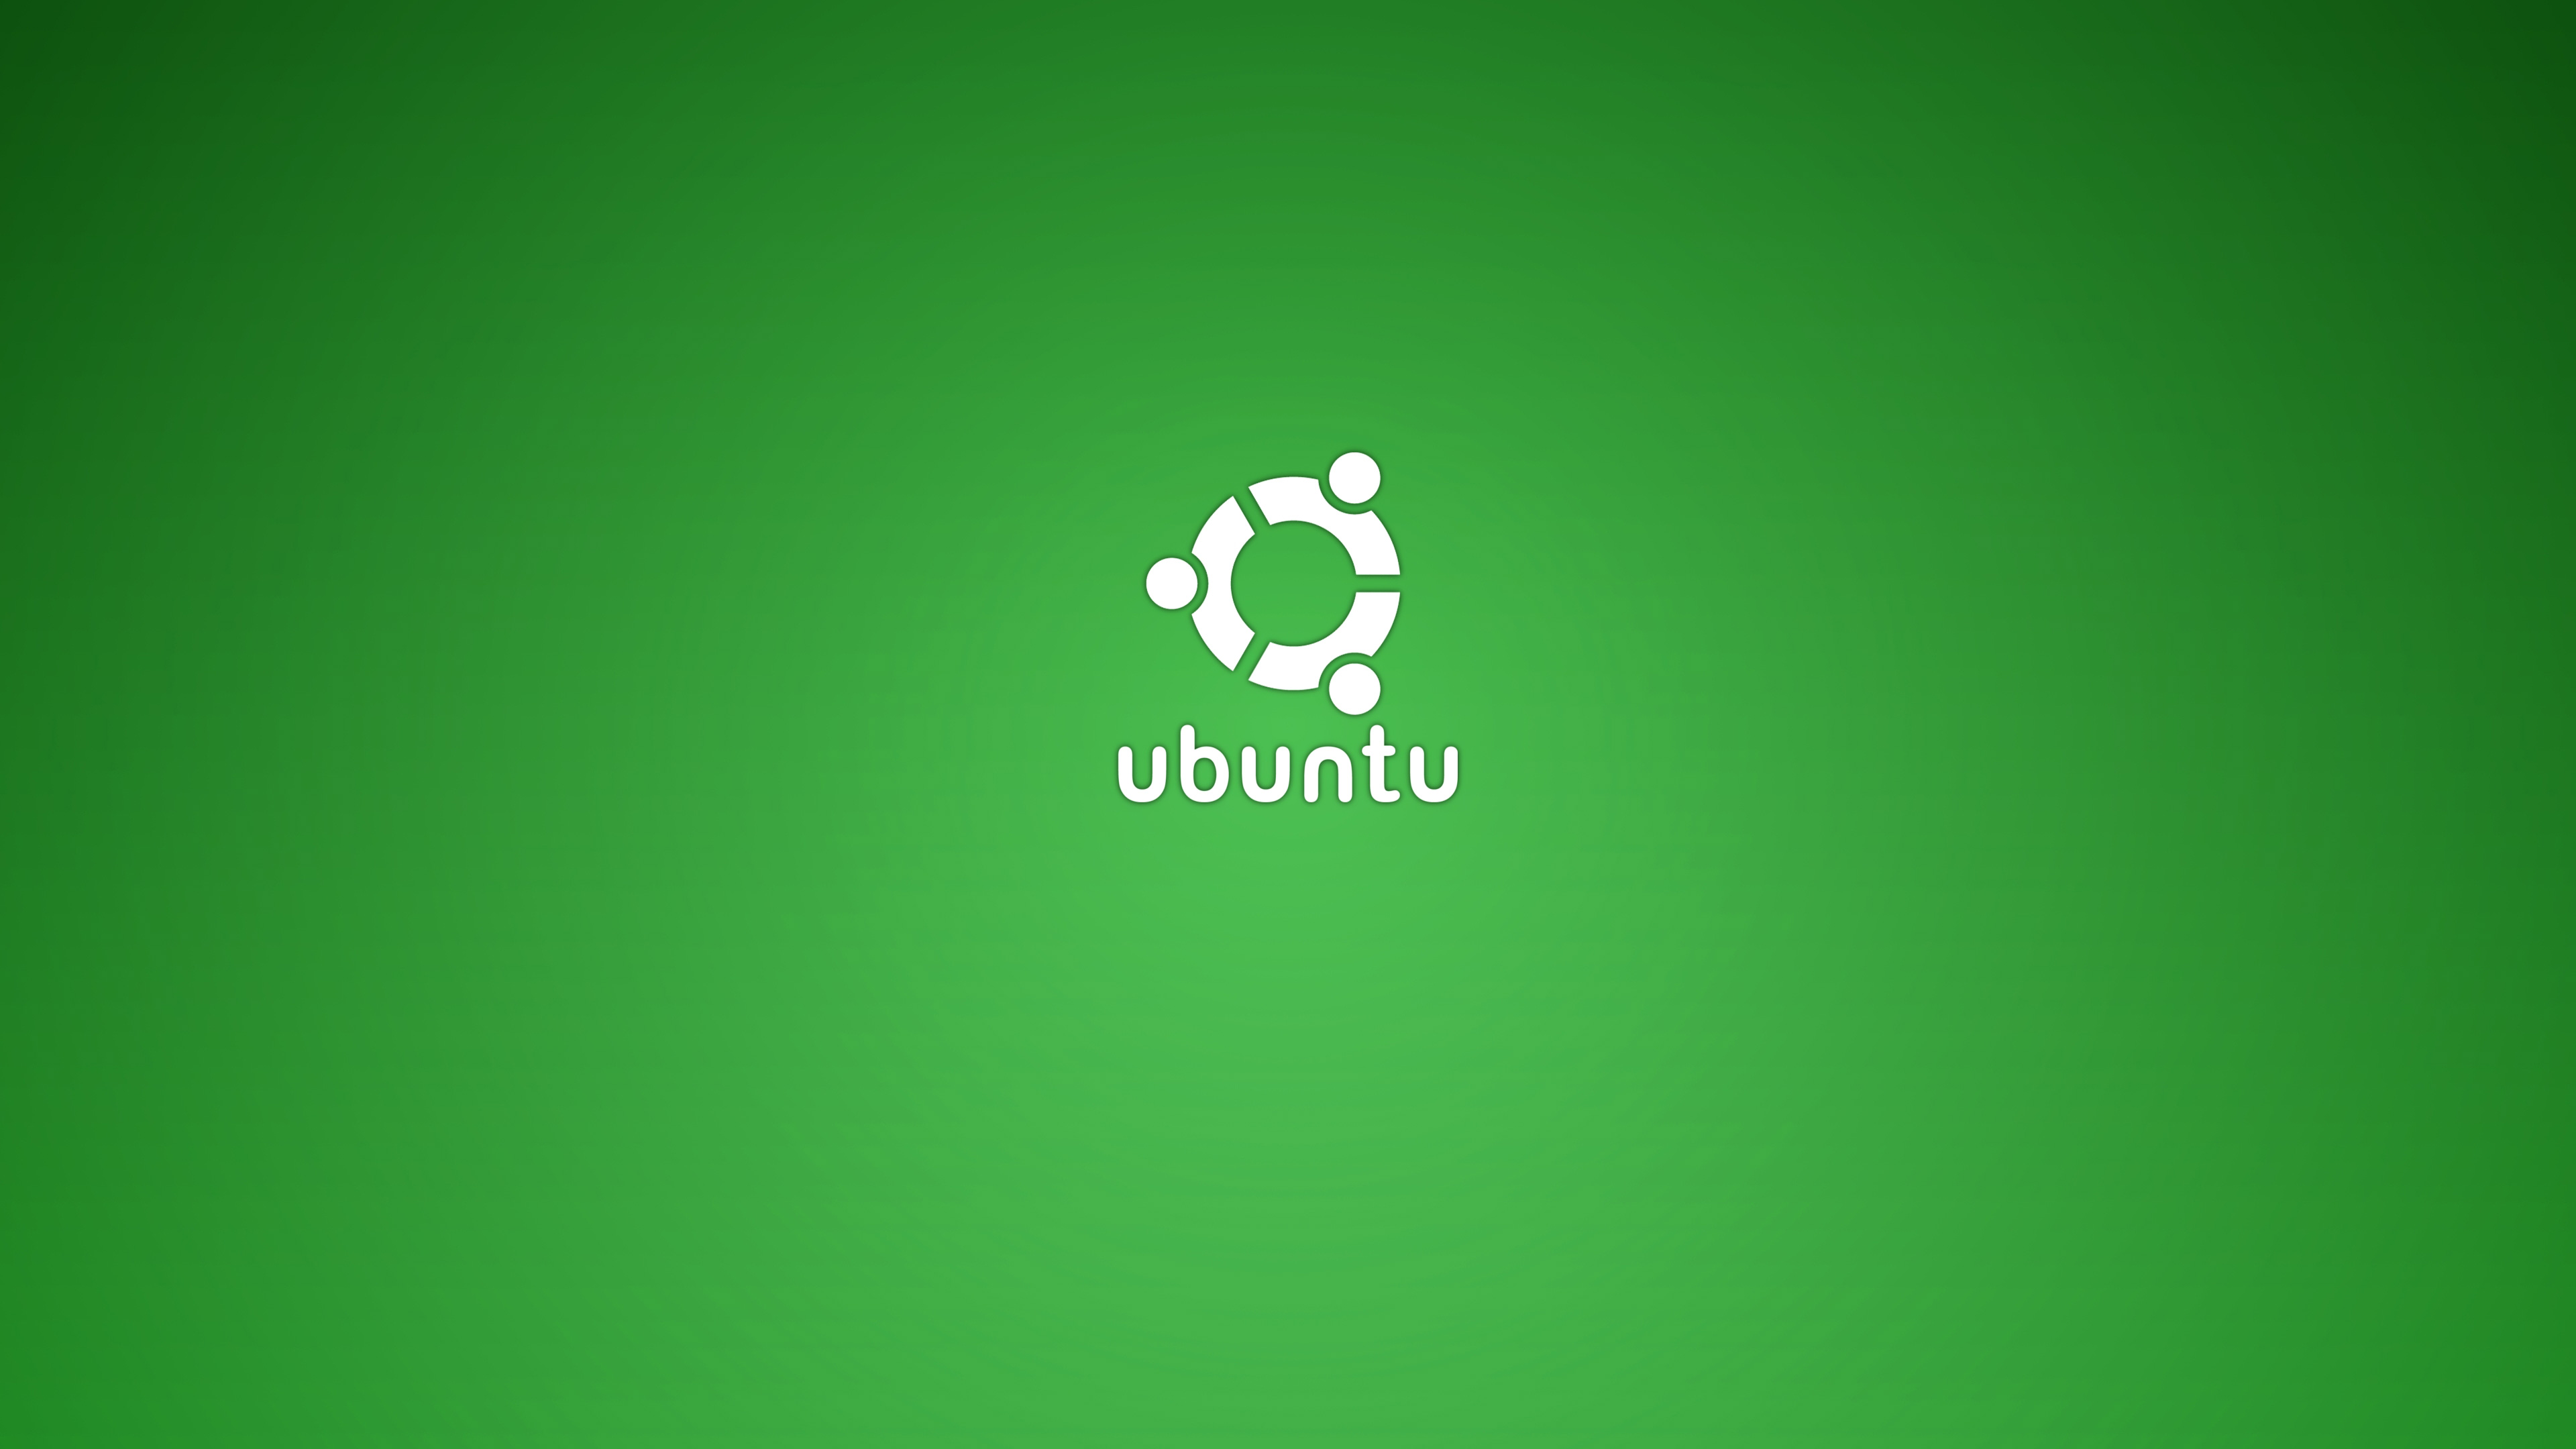 ubuntu wallpaper,green,logo,font,text,graphics